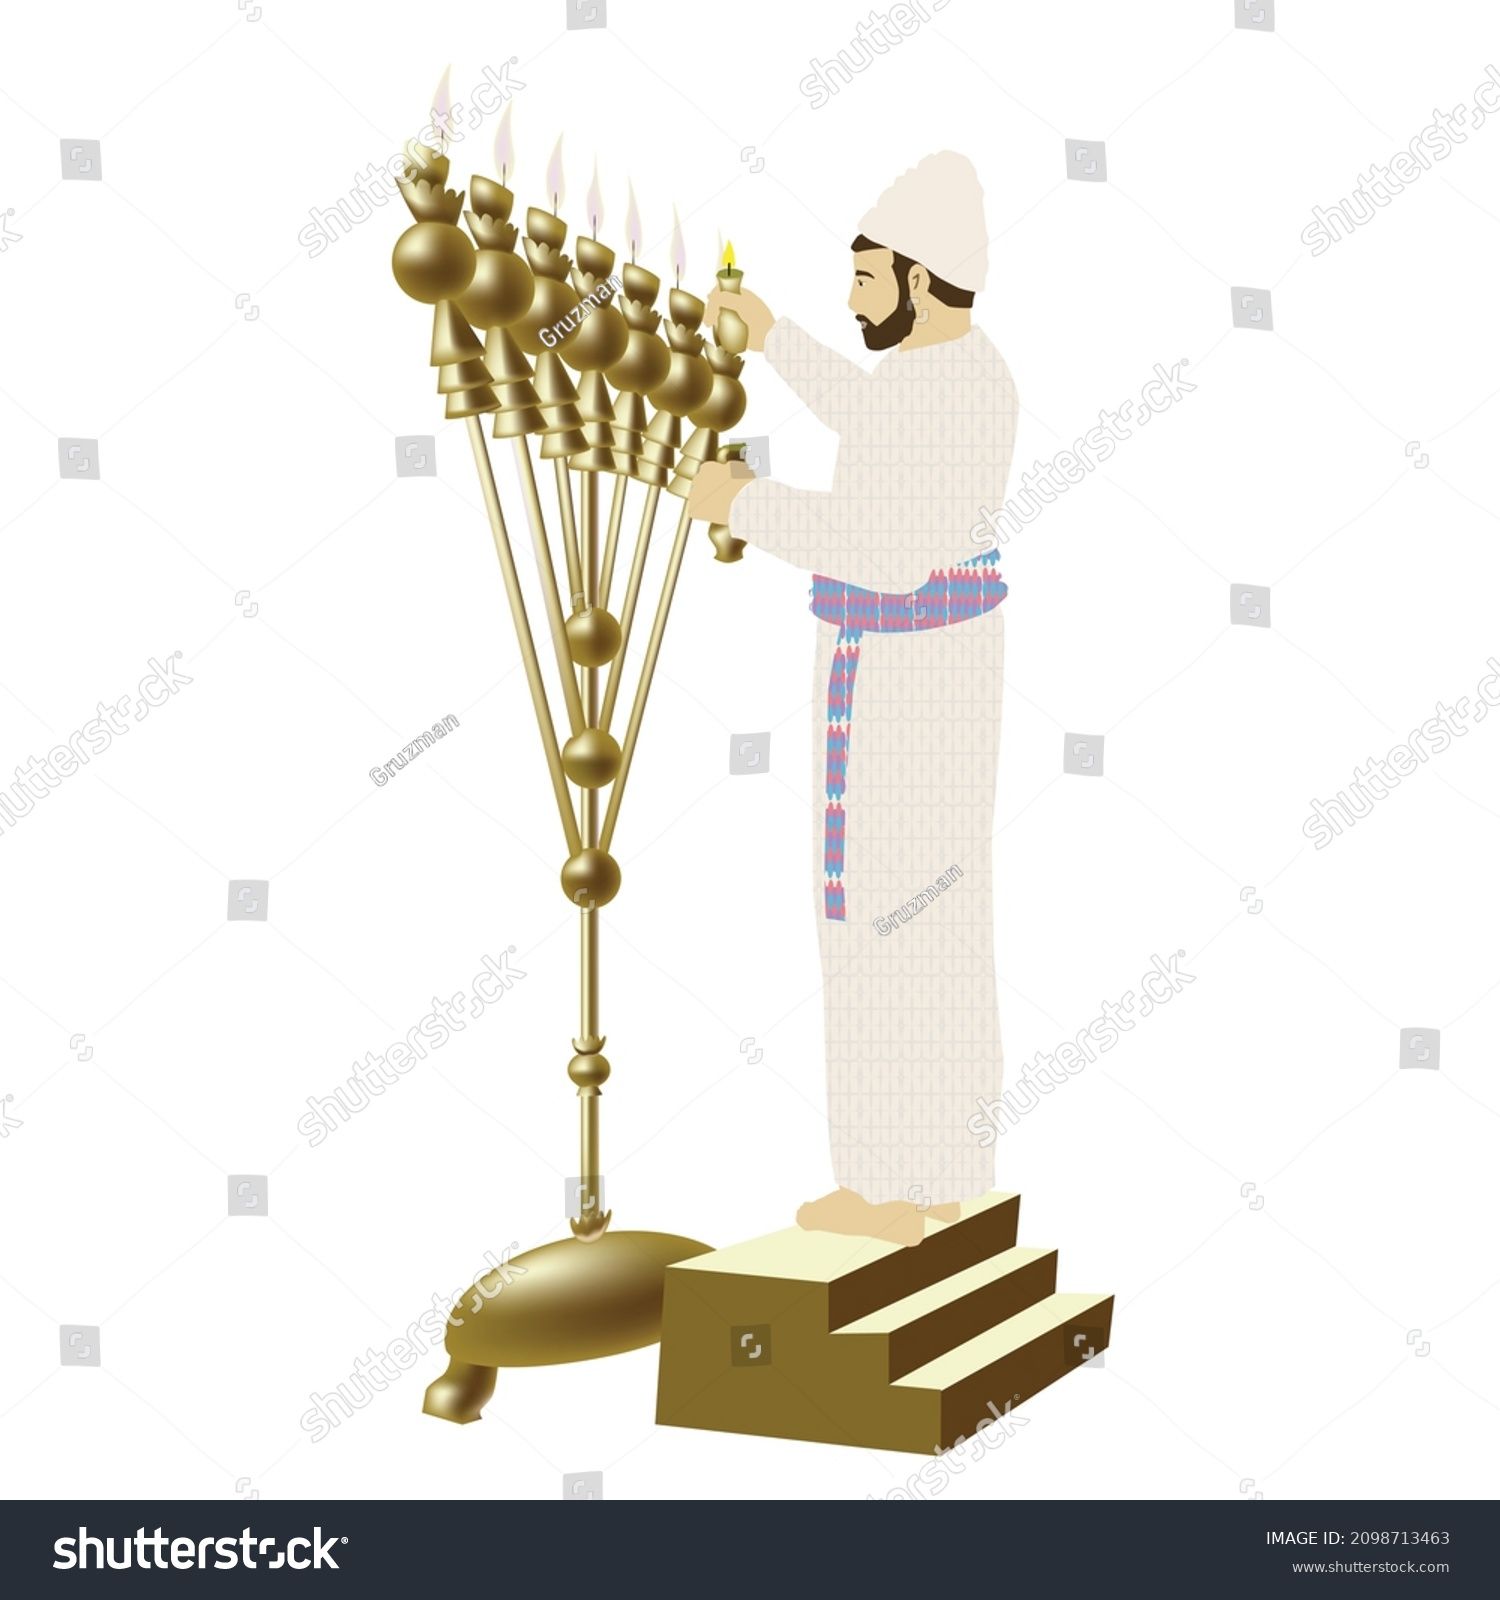 כהן בבגדי כהונה מדליק מיטיב את המנורה מנורת הזהב בבית המקדש ציור איור וקטור וקטורי קליפארט קלי...jpg